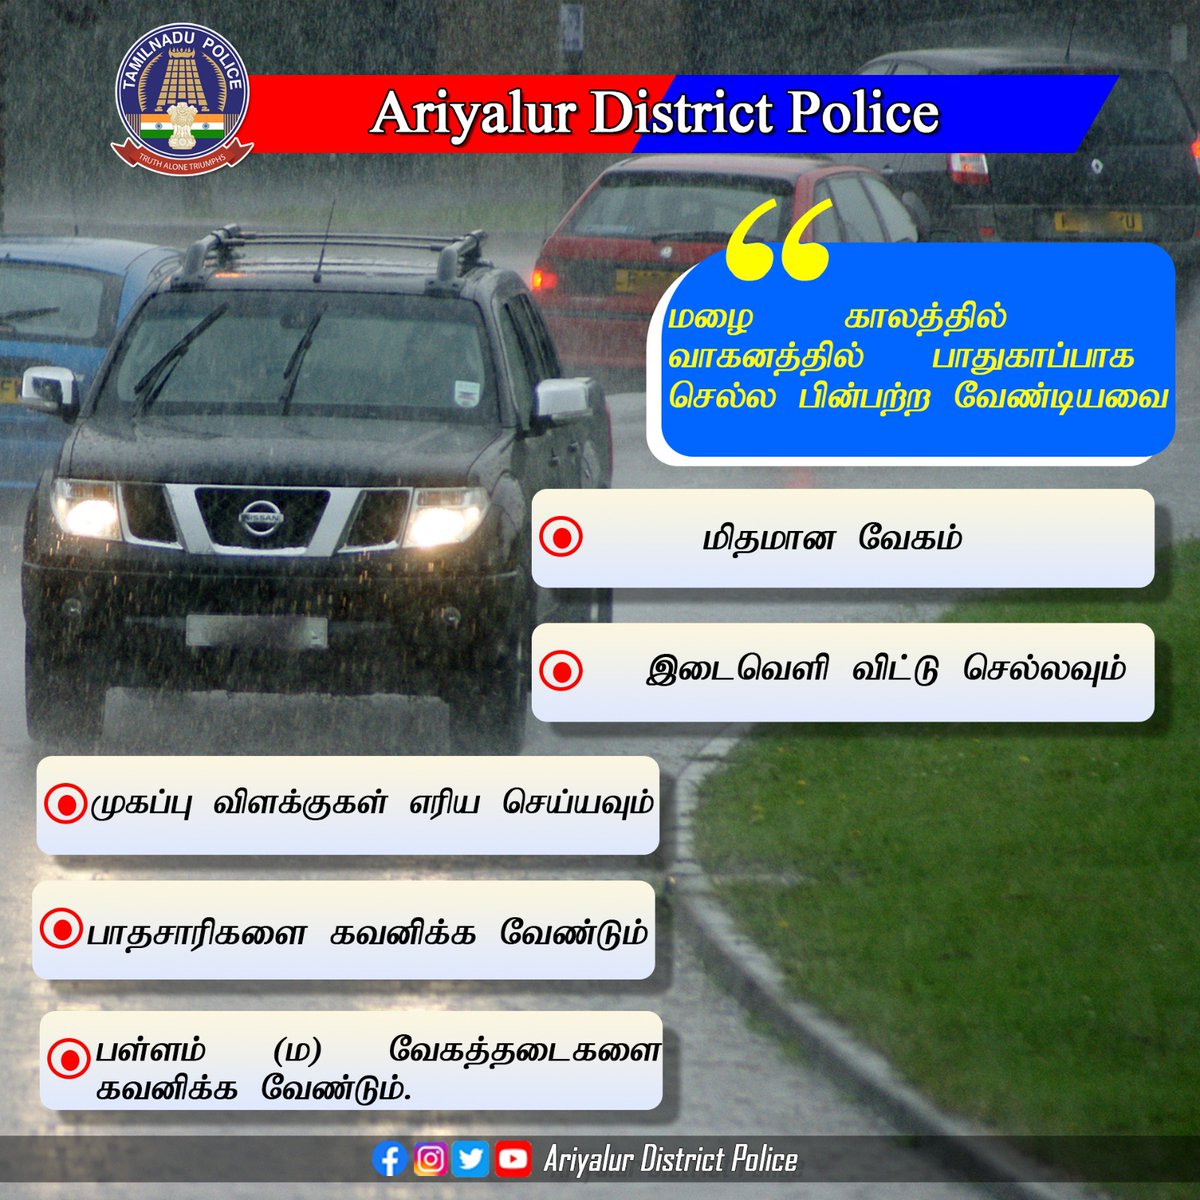 #AriyalurDistrictPolice #safeariyalur #SPariyalur #Dial100 #czpolice #TNPolice